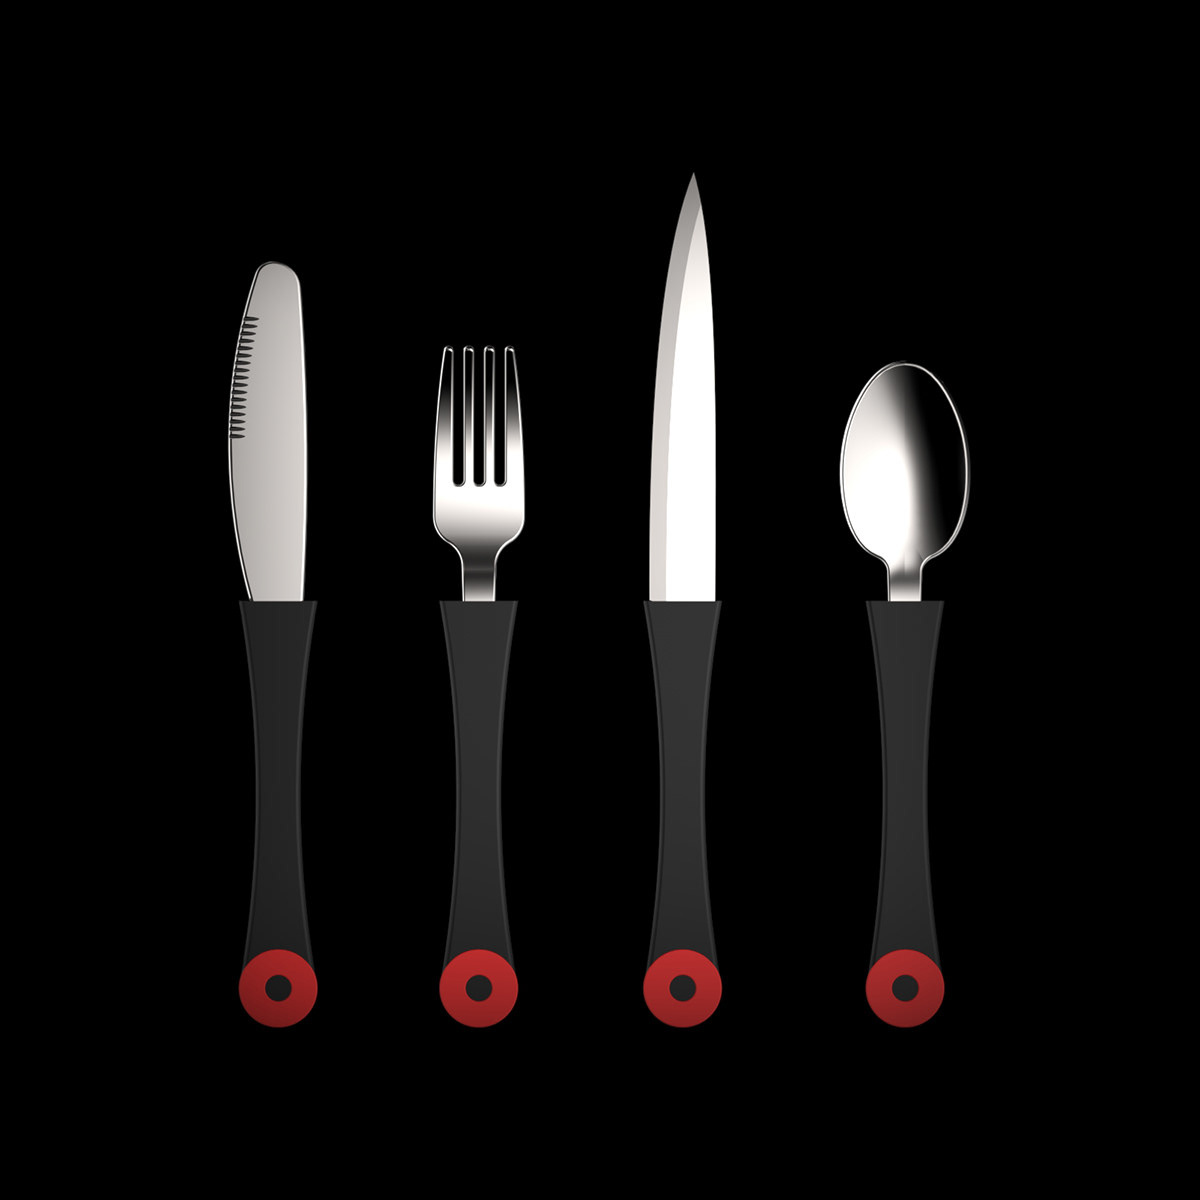 cutlery fork knife spoon tableware restaurant